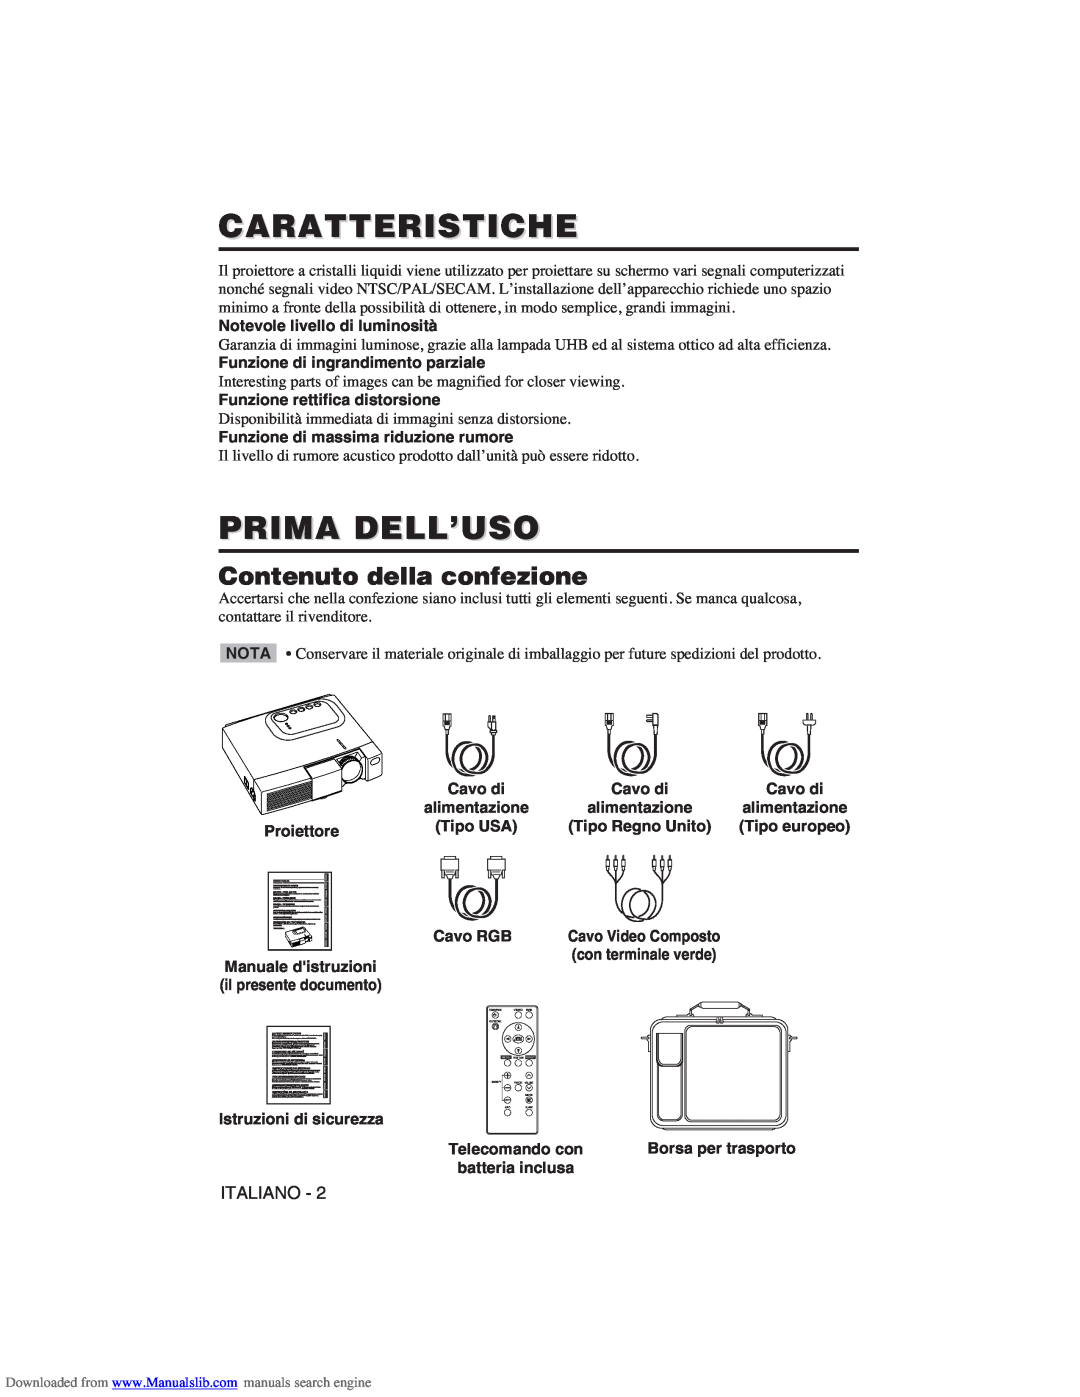 Hitachi CP-X275W user manual Caratteristiche, Prima Dell’Uso, Contenuto della confezione 